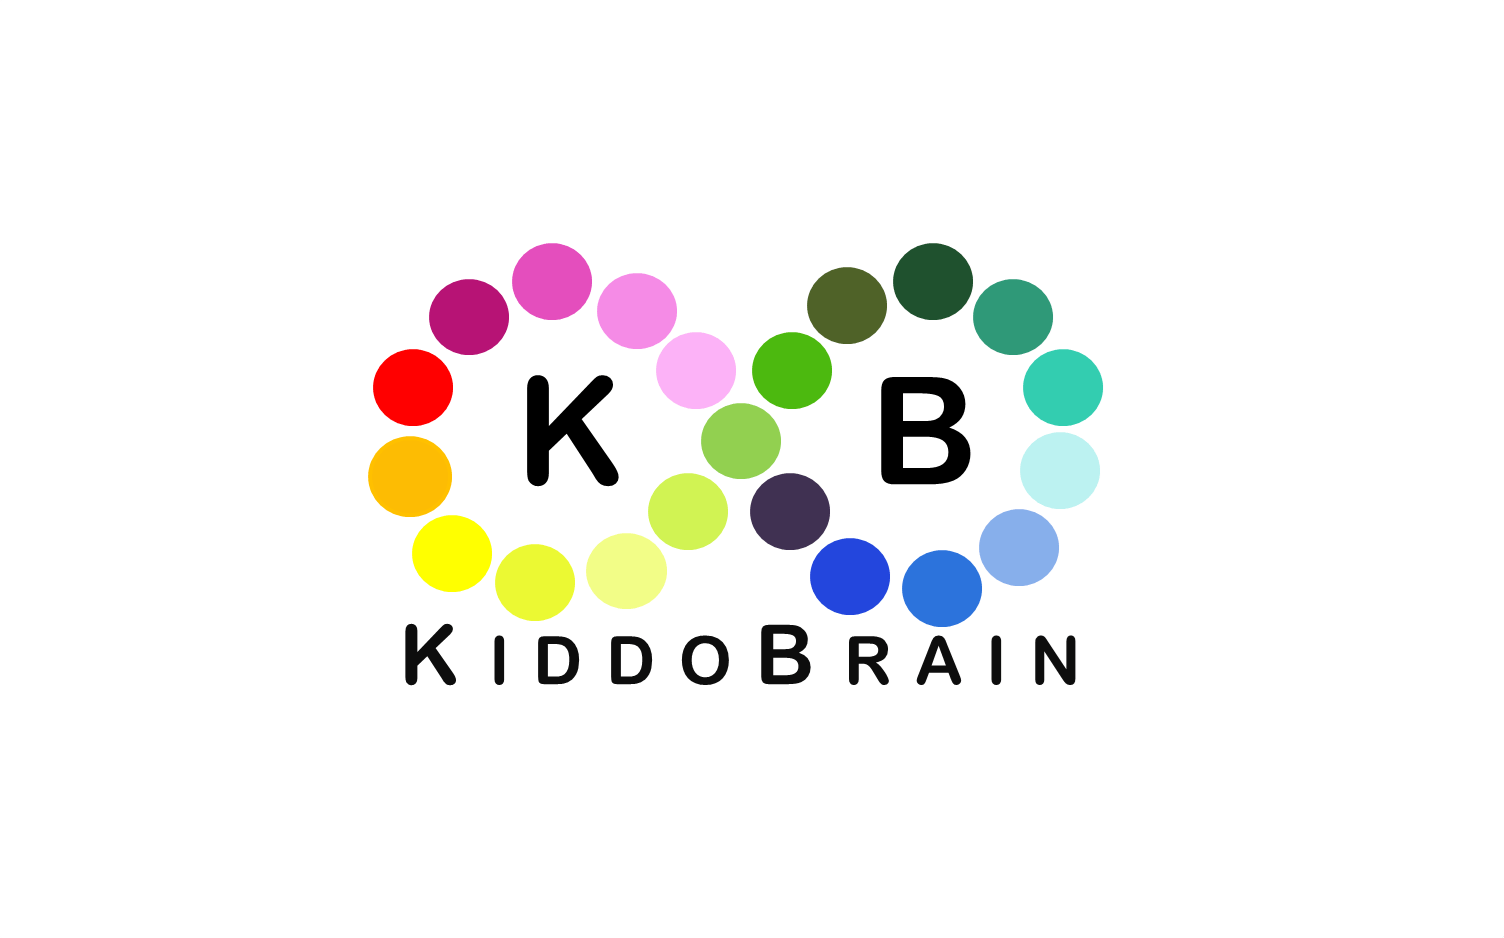 KiddoBrain logo